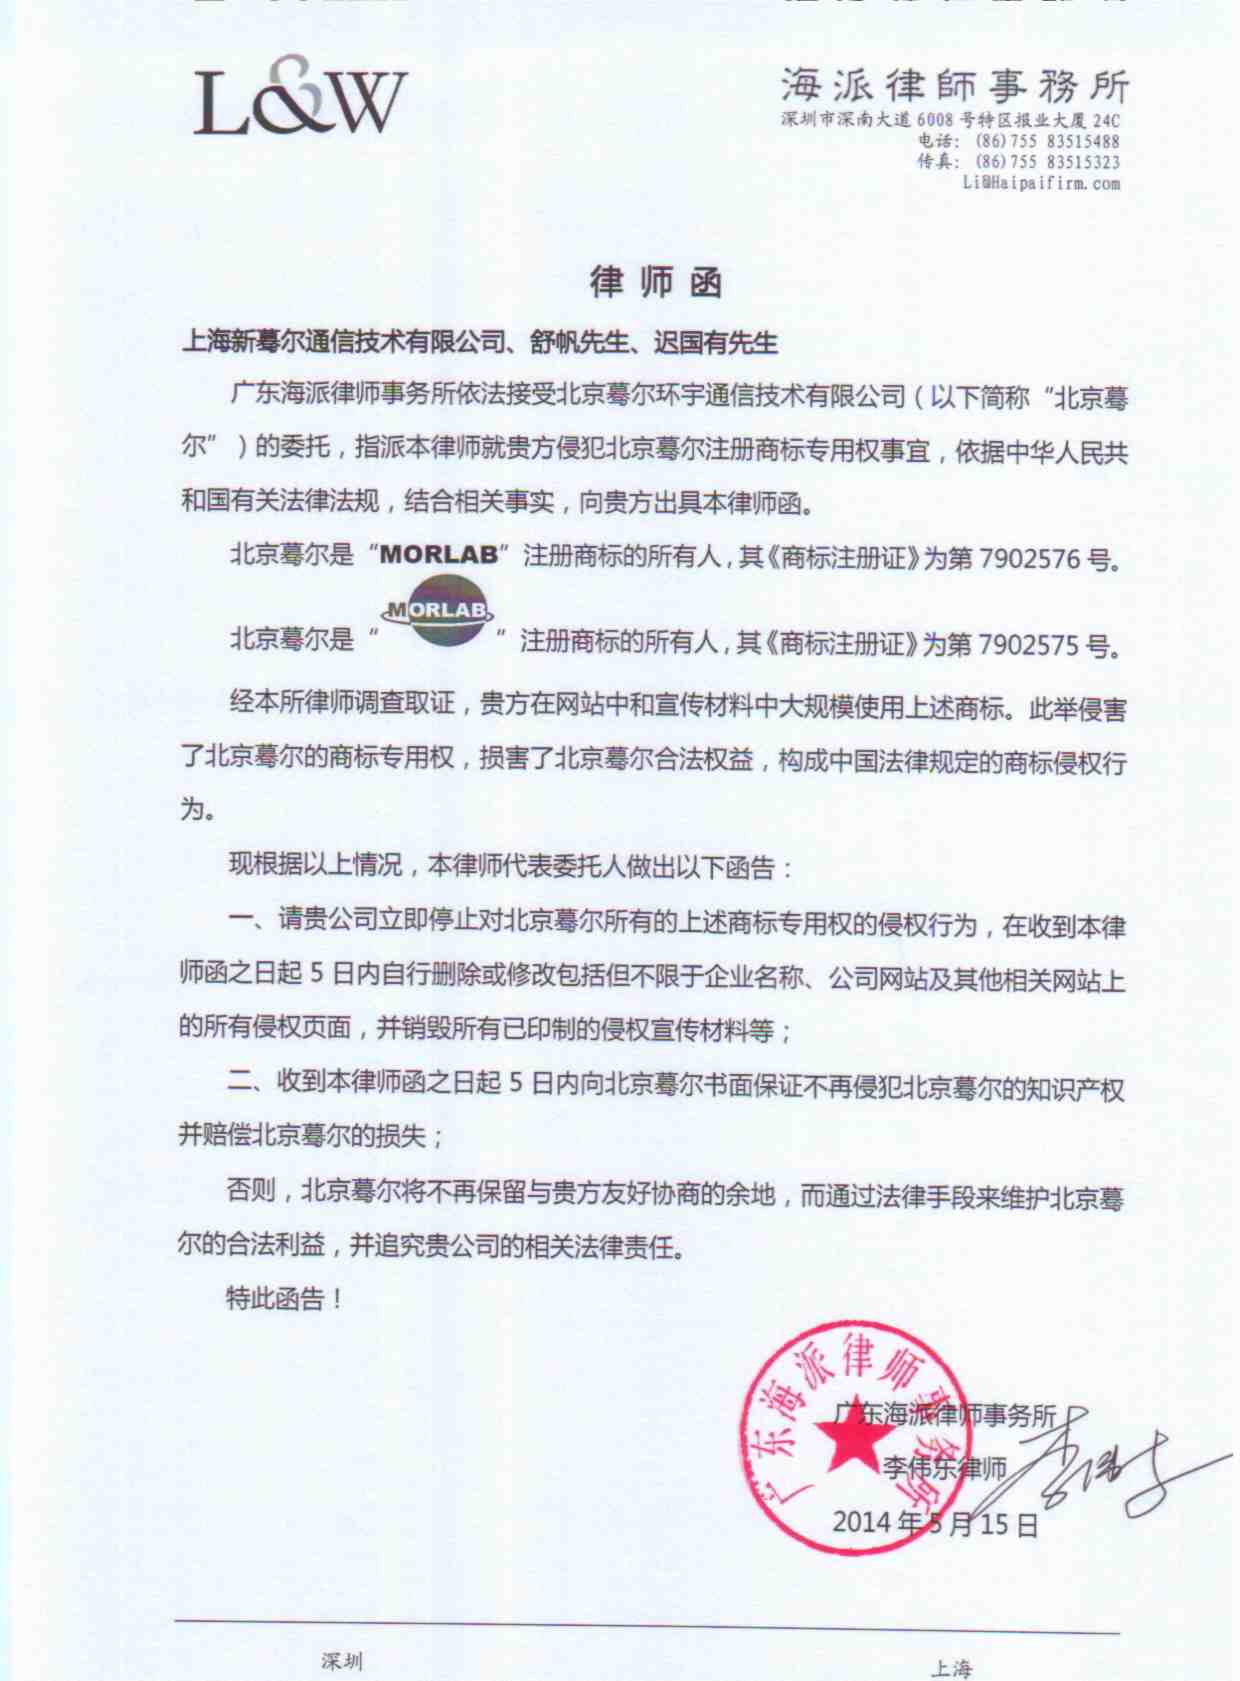 关于终止上海新蓦尔通信技术有限公司使用摩尔实验室注册商标的声明